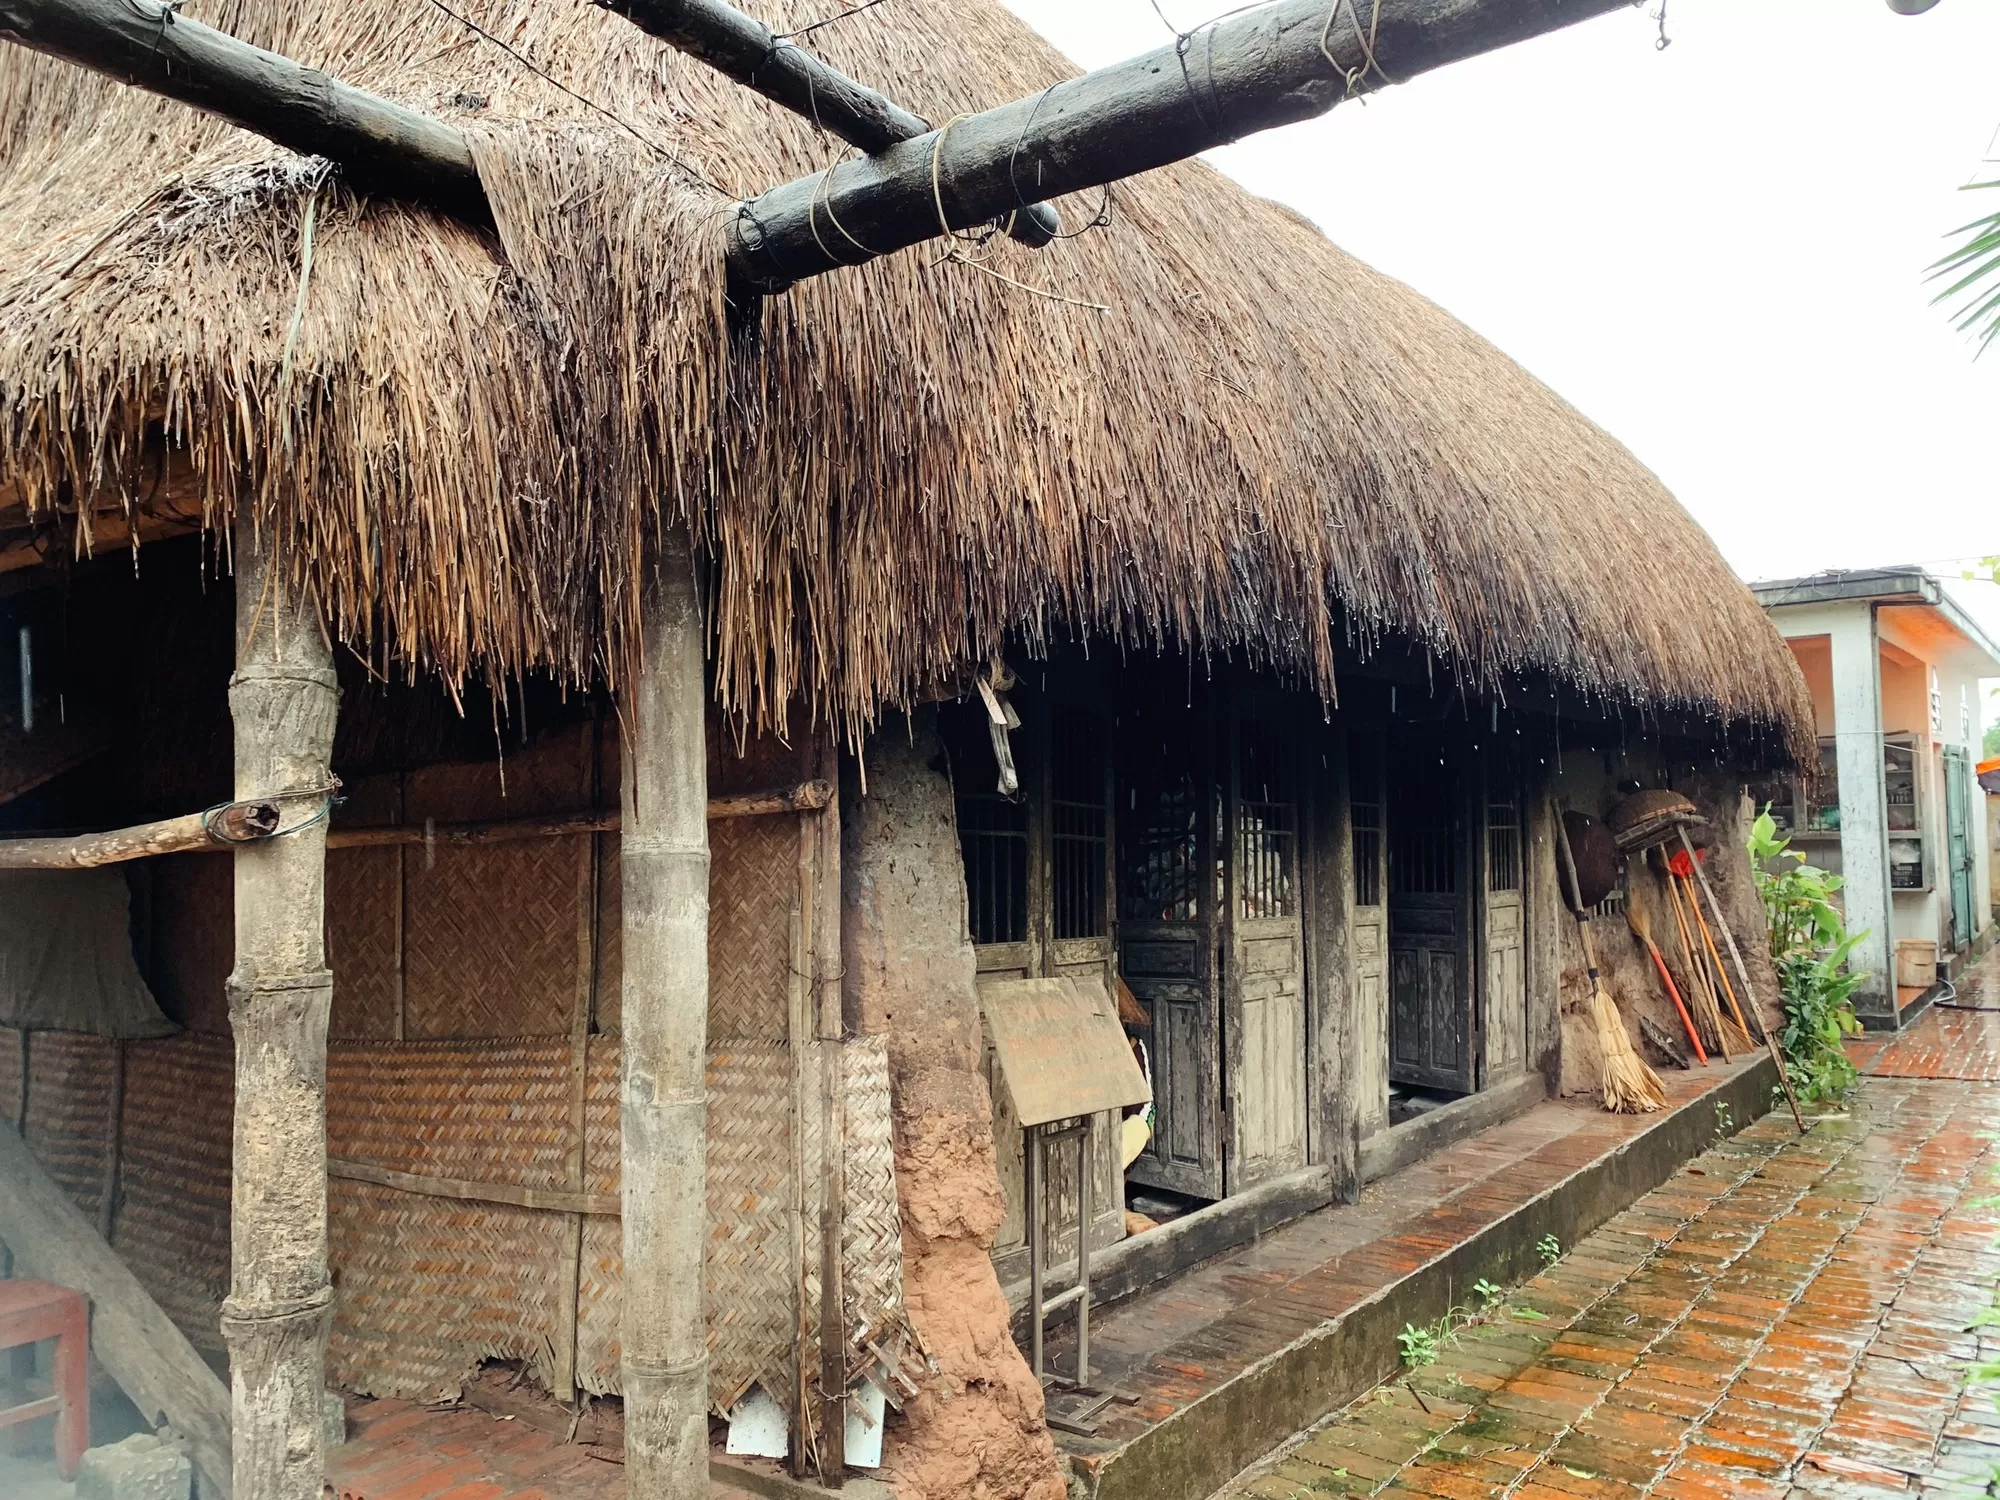 Nhà rơm nhà đất – Biểu tượng của làng quê Việt Nam